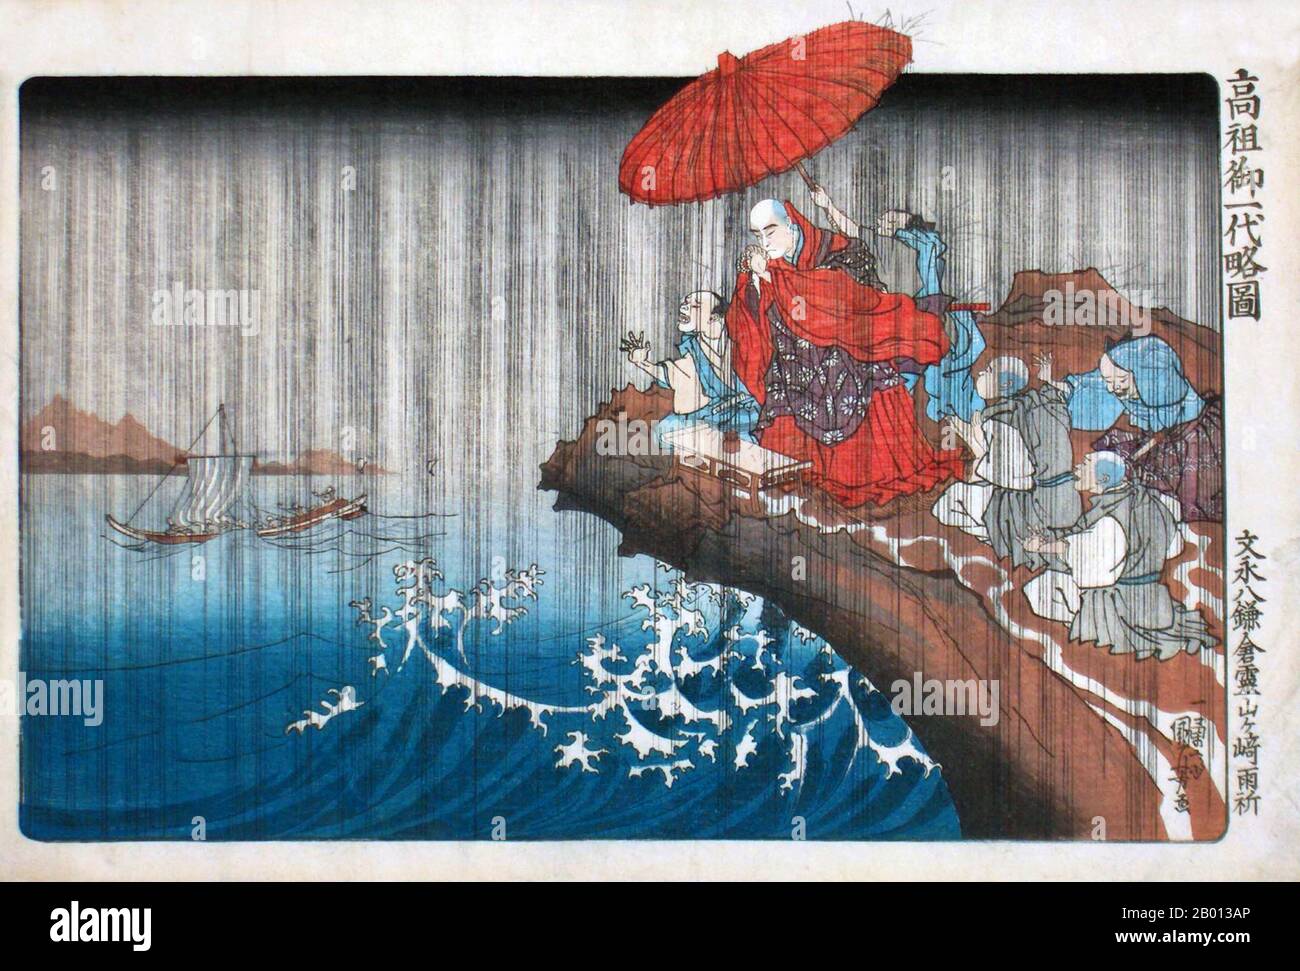 Japon: "La vie de Nichiren: La prière pour la pluie répondit". Impression de blocs de bois Ukiyo-e par Utagawa Kuniyoshi/Kuniyoshi Ichiyusai (1797-1861), ch. 1835. Nichiren (16 février 1222 – 13 octobre 1282) était un moine bouddhiste qui vivait au Japon pendant la période Kamakura (1185–1333). Nichiren a enseigné la dévotion au Sutra du Lotus, intitulé Myoho-Renge-Kyo en japonais, comme moyen exclusif d'atteindre l'illumination et le chant de Namu-Myoho-Renge-Kyo comme pratique essentielle de l'enseignement. Diverses écoles avec des interprétations divergentes des enseignements de Nichiren comprennent le bouddhisme Nichiren. Banque D'Images